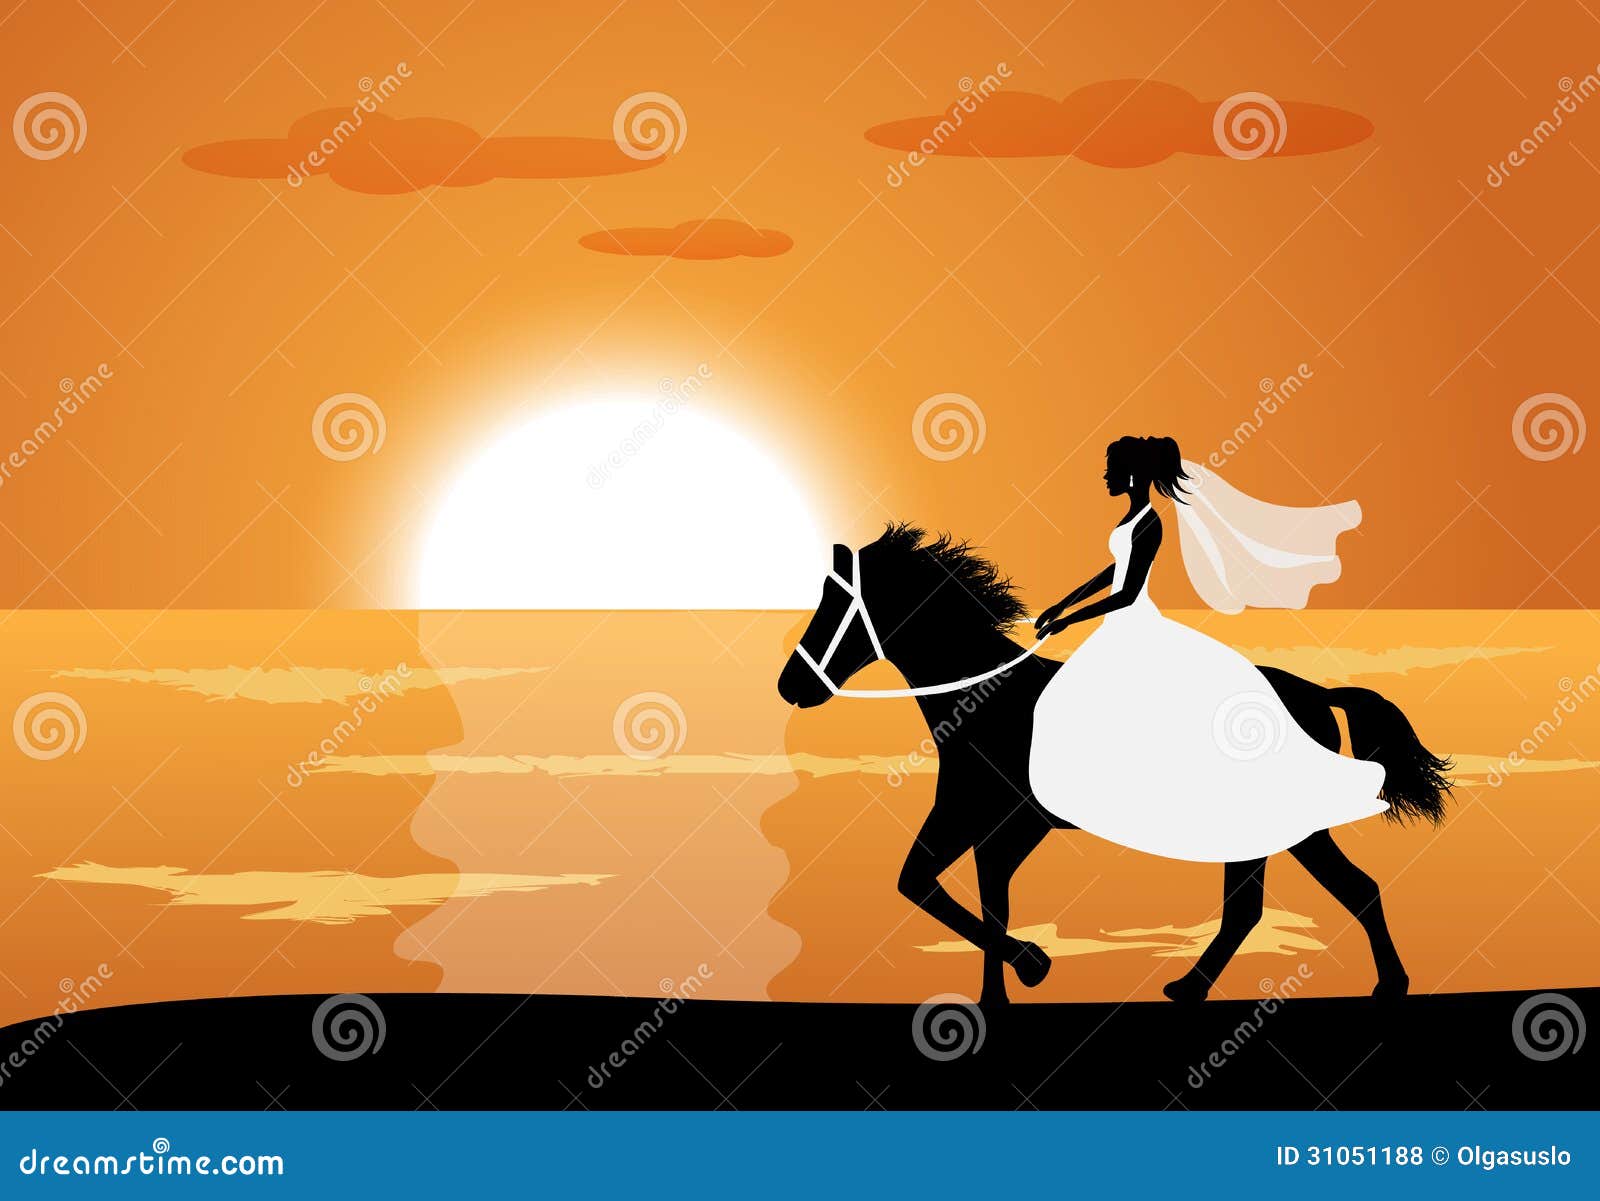 Еду на коне песня. Девочка едет на коне рисунок. Лошадь едет карьером.